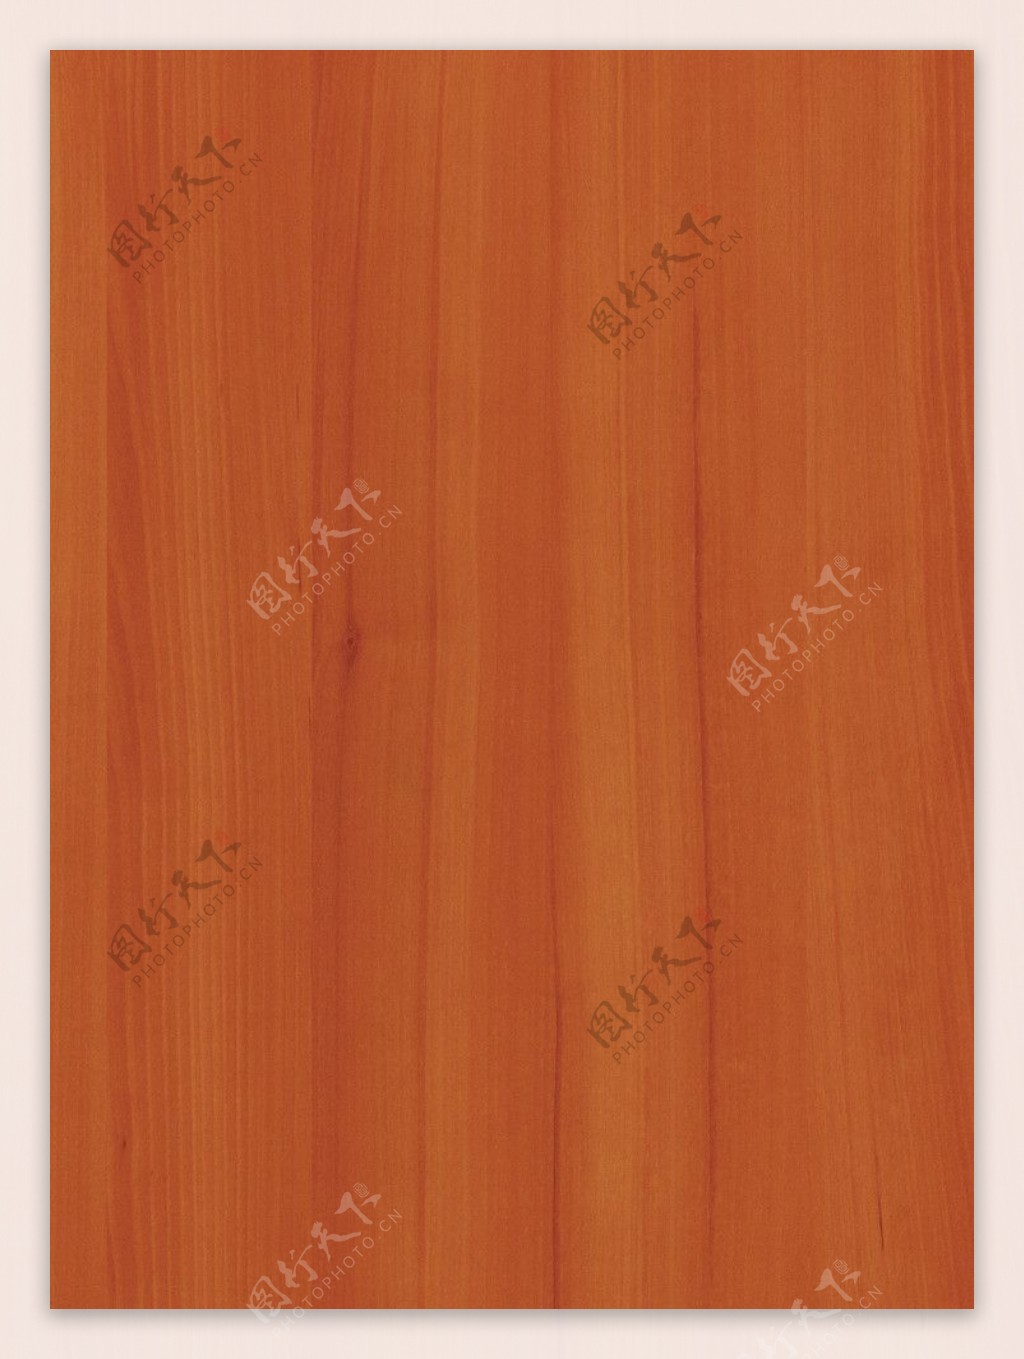 木板材质图片